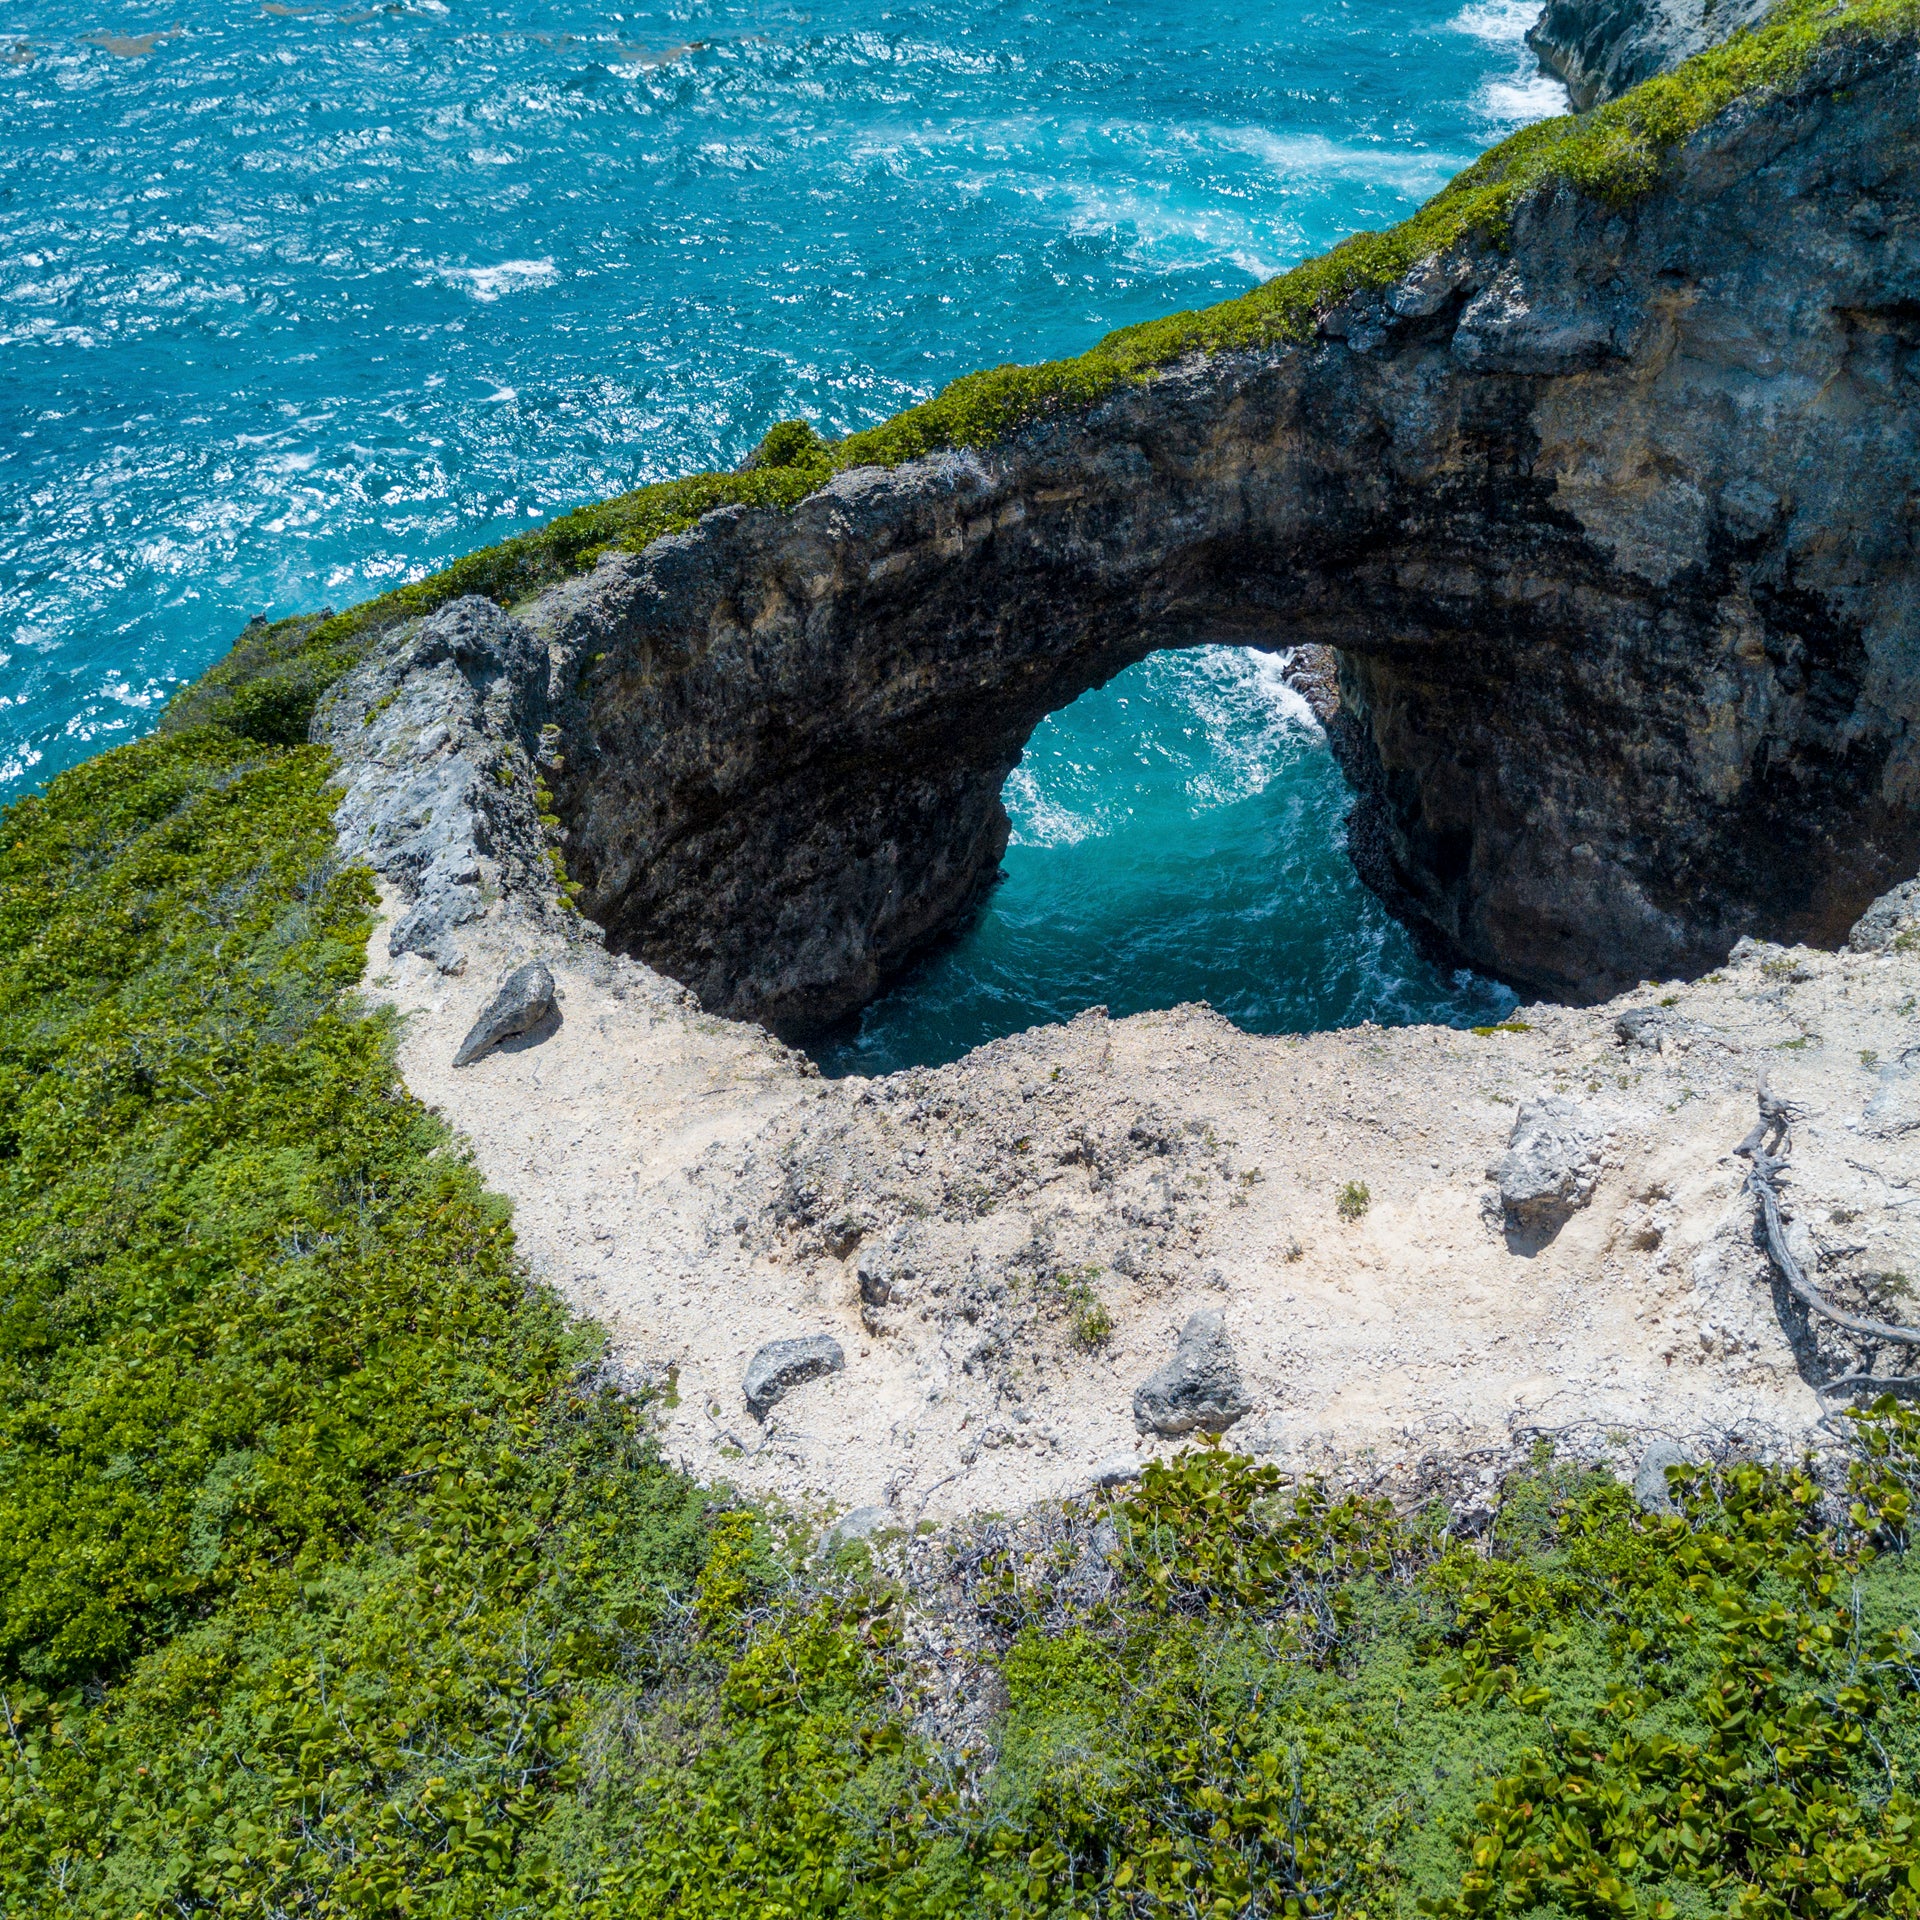 Guadeloupe coast bridge of rocks and sea